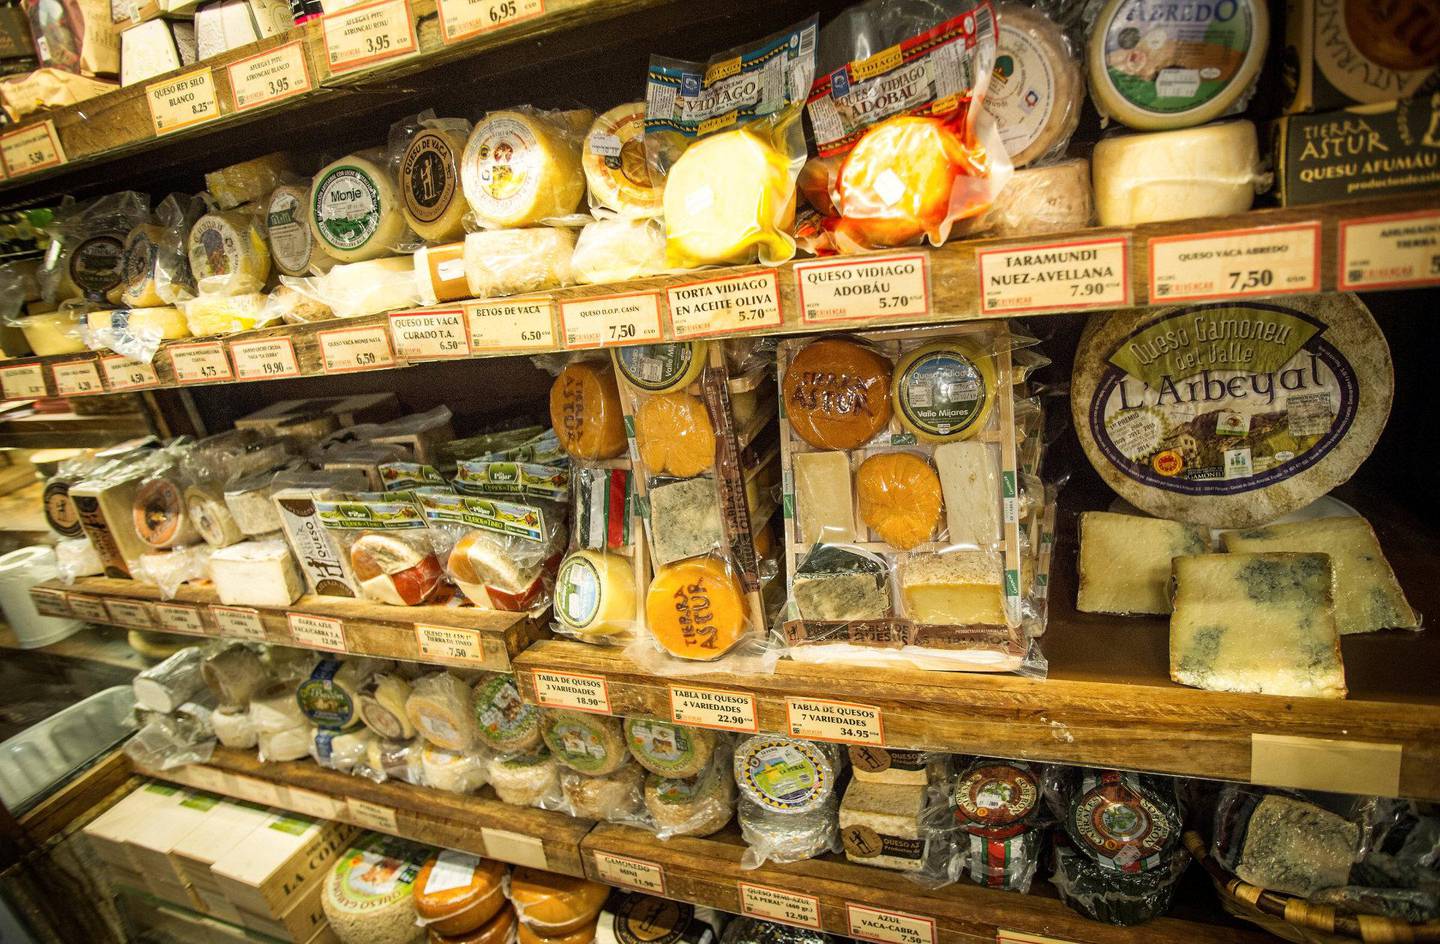 En reise     til Asturias-regionen kan gjerne ha ost som tema. De mer enn 100 variantene som lages her, er godt representert i Oviedos mange delikatessebutikker.